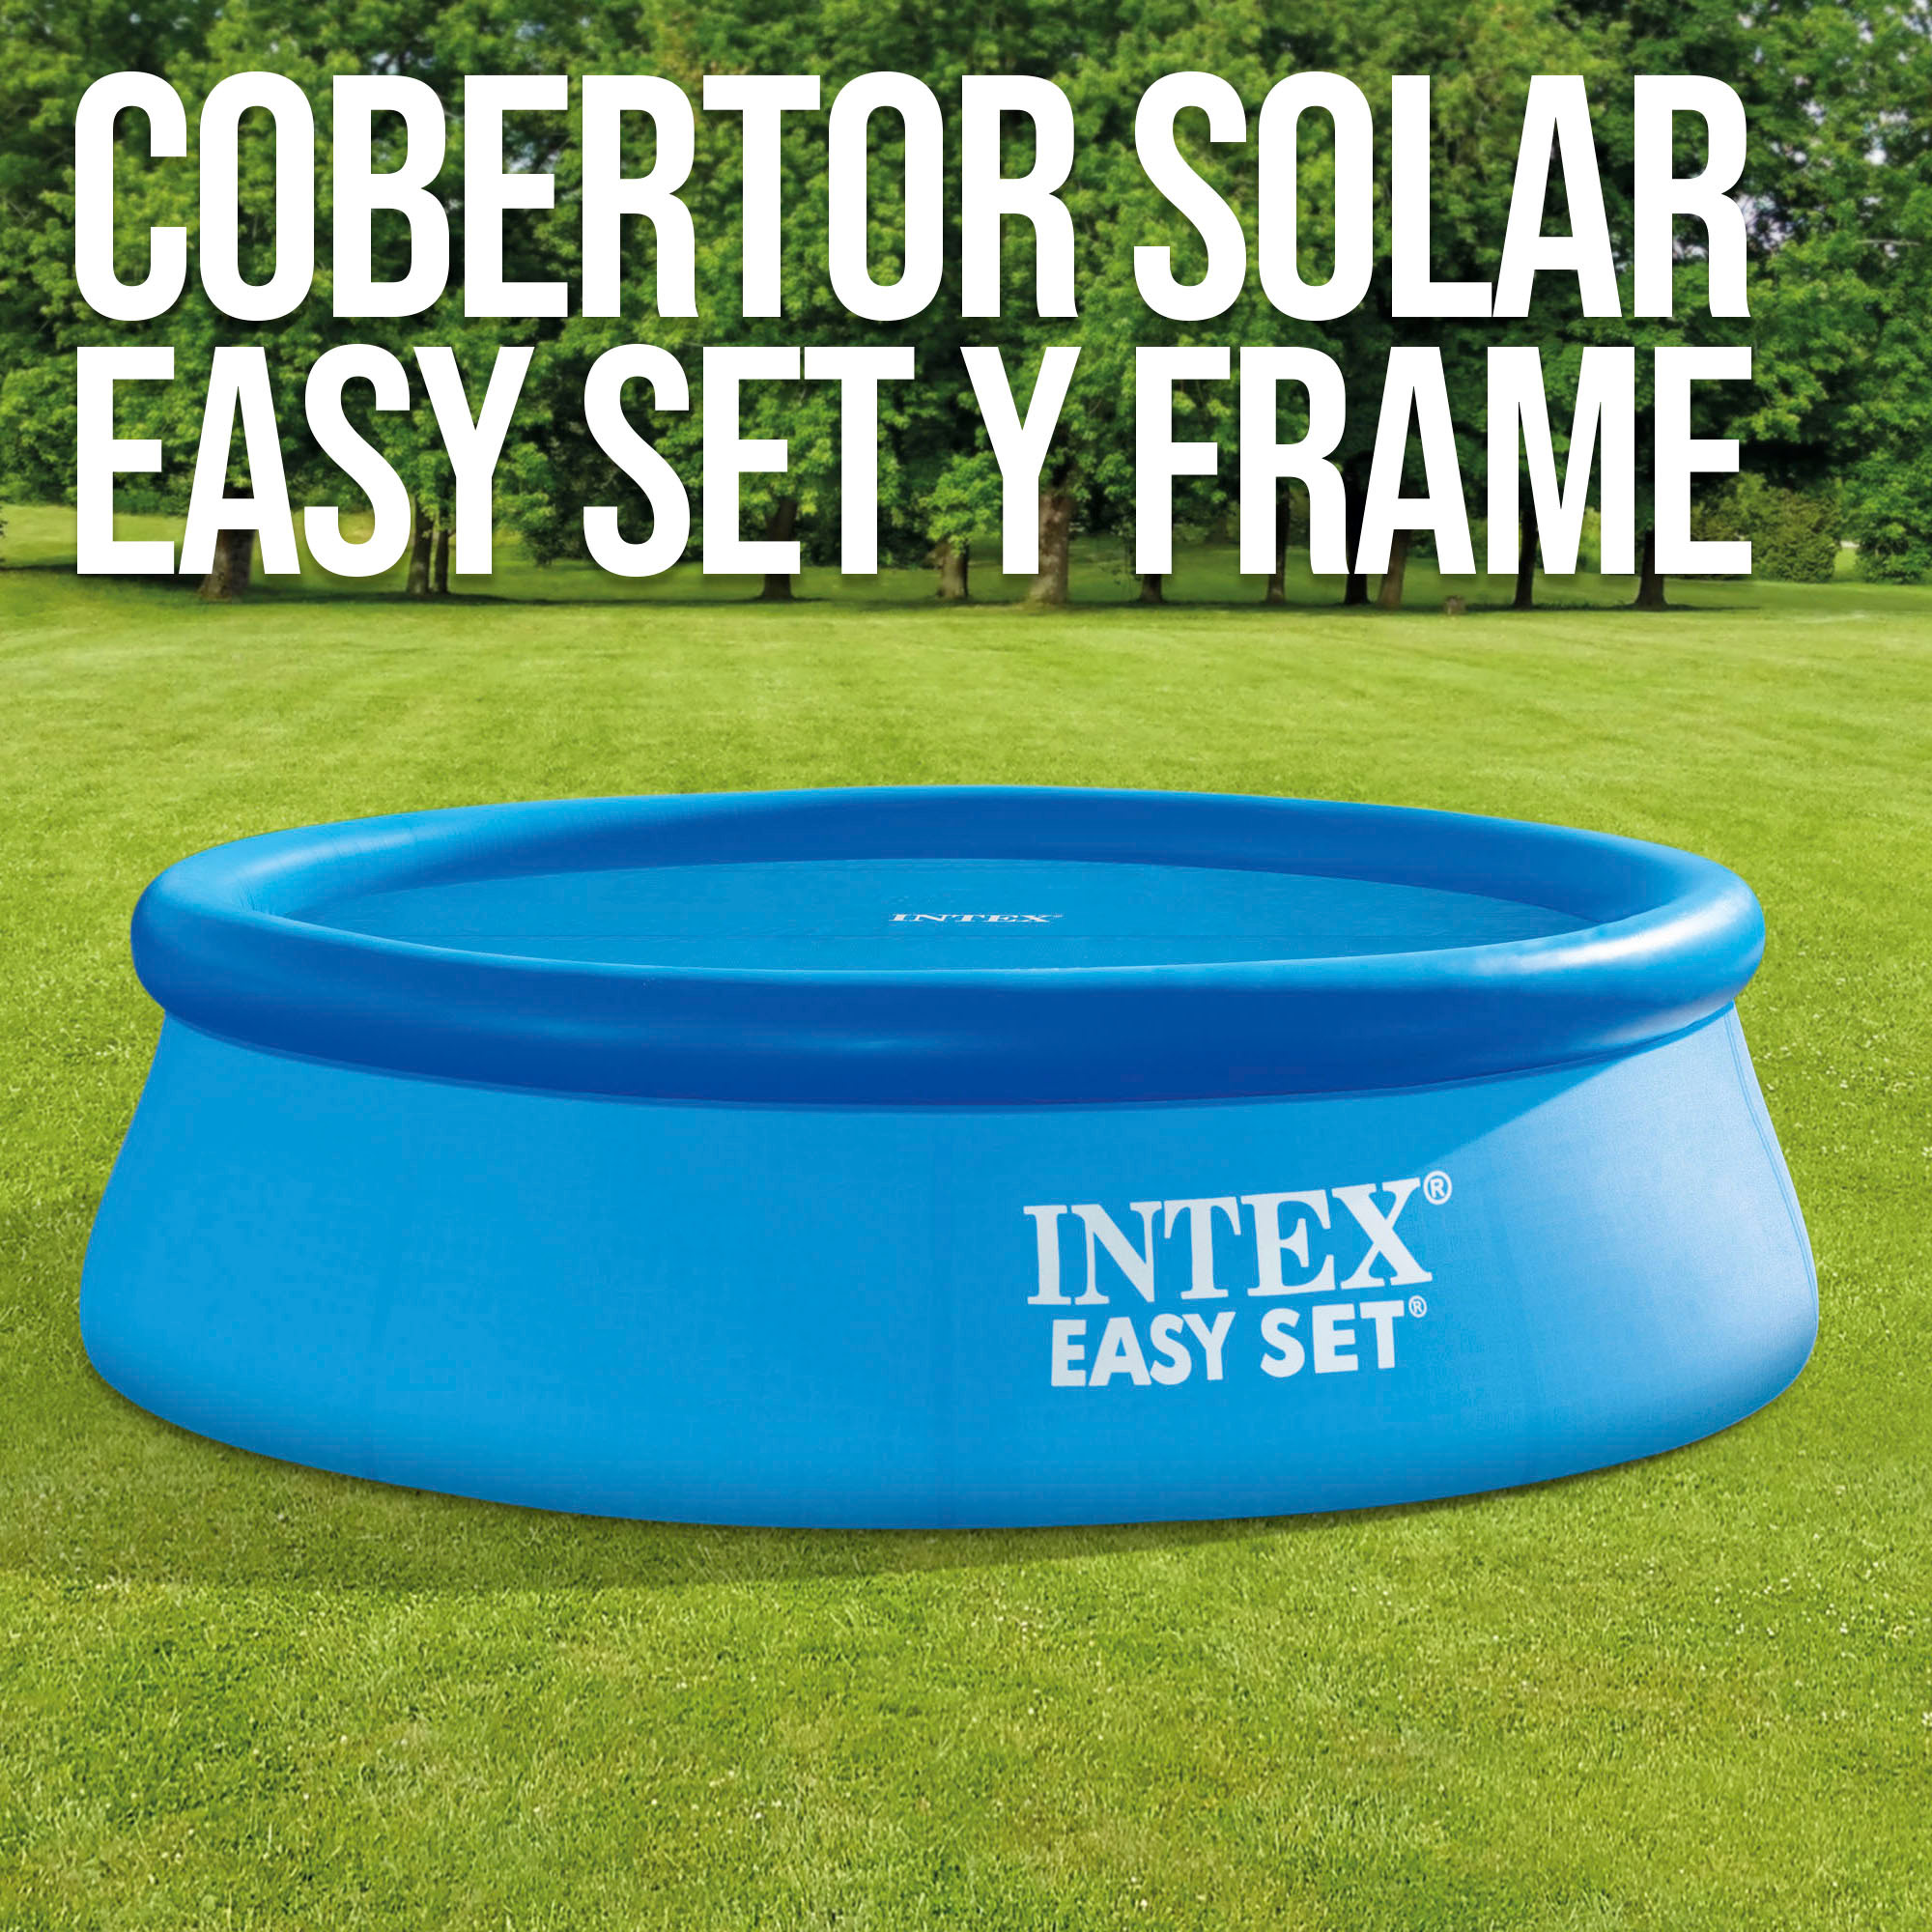 Cobertor Solar Intex Piscinas Easy Set O Metal Frame 366 Cm De Diámetro